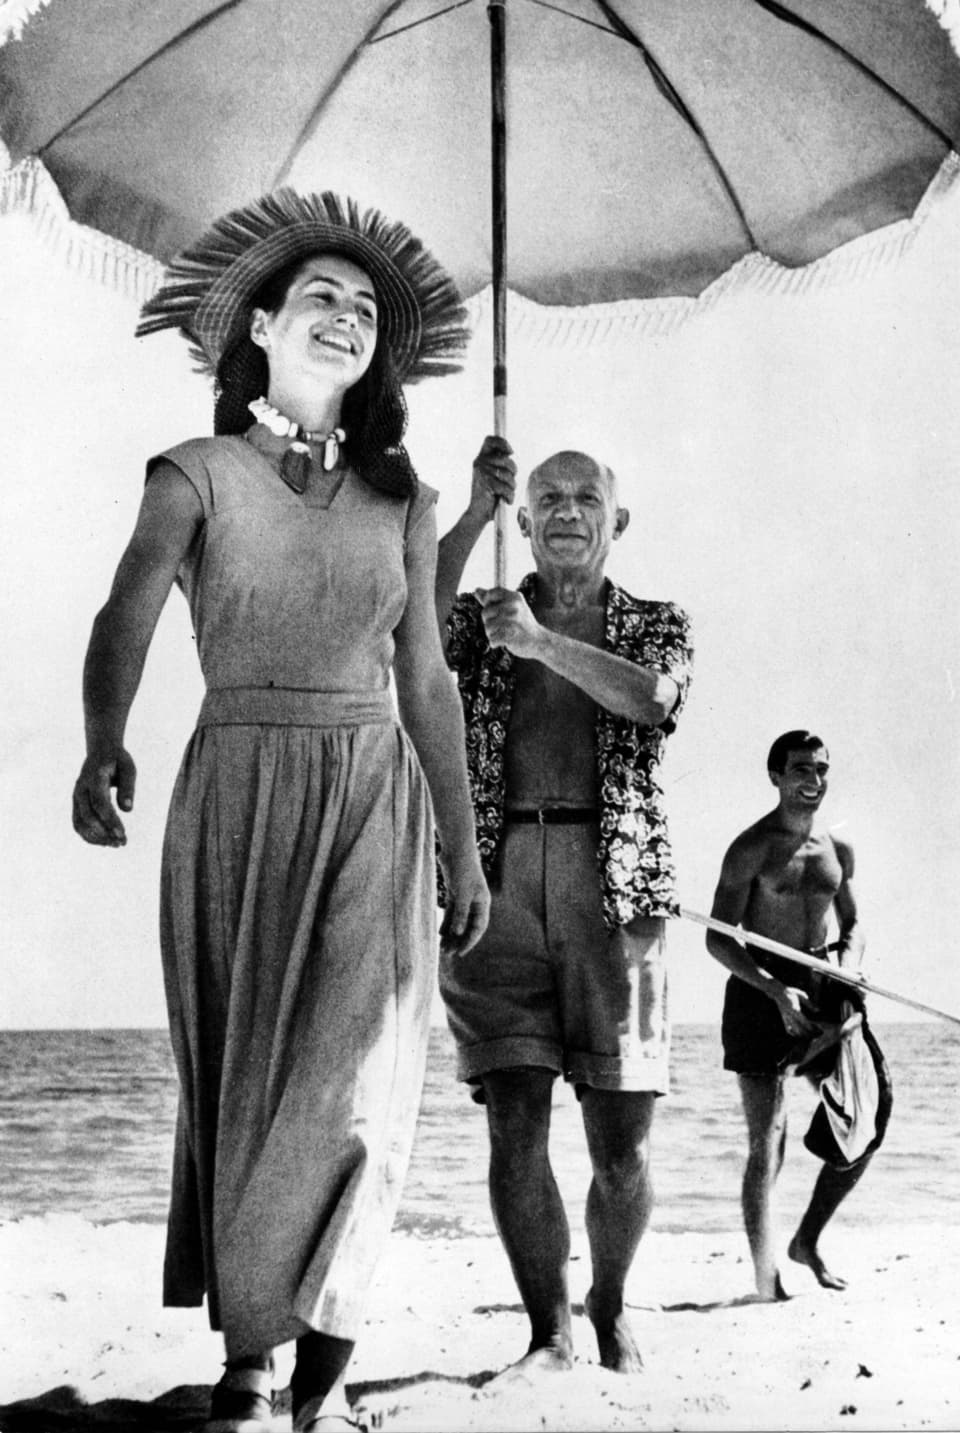 Ein stehender Mann am Strand hält einen grossen Sonnenschirm über eine junge lächelnde Frau mit Strohhut.